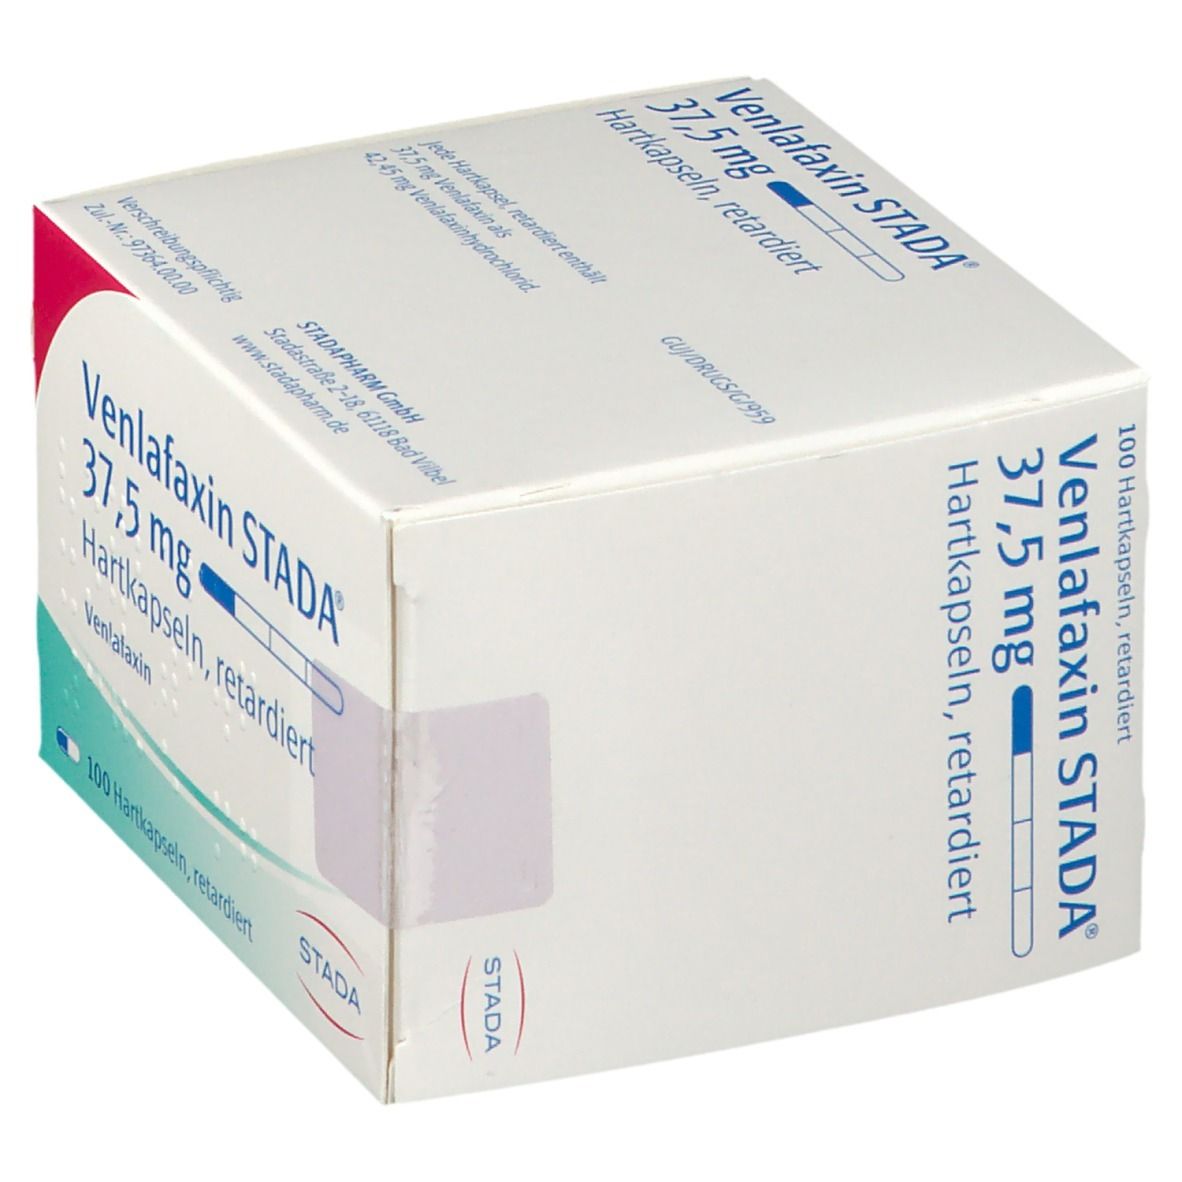 Venlafaxin STADA® 37,5 mg